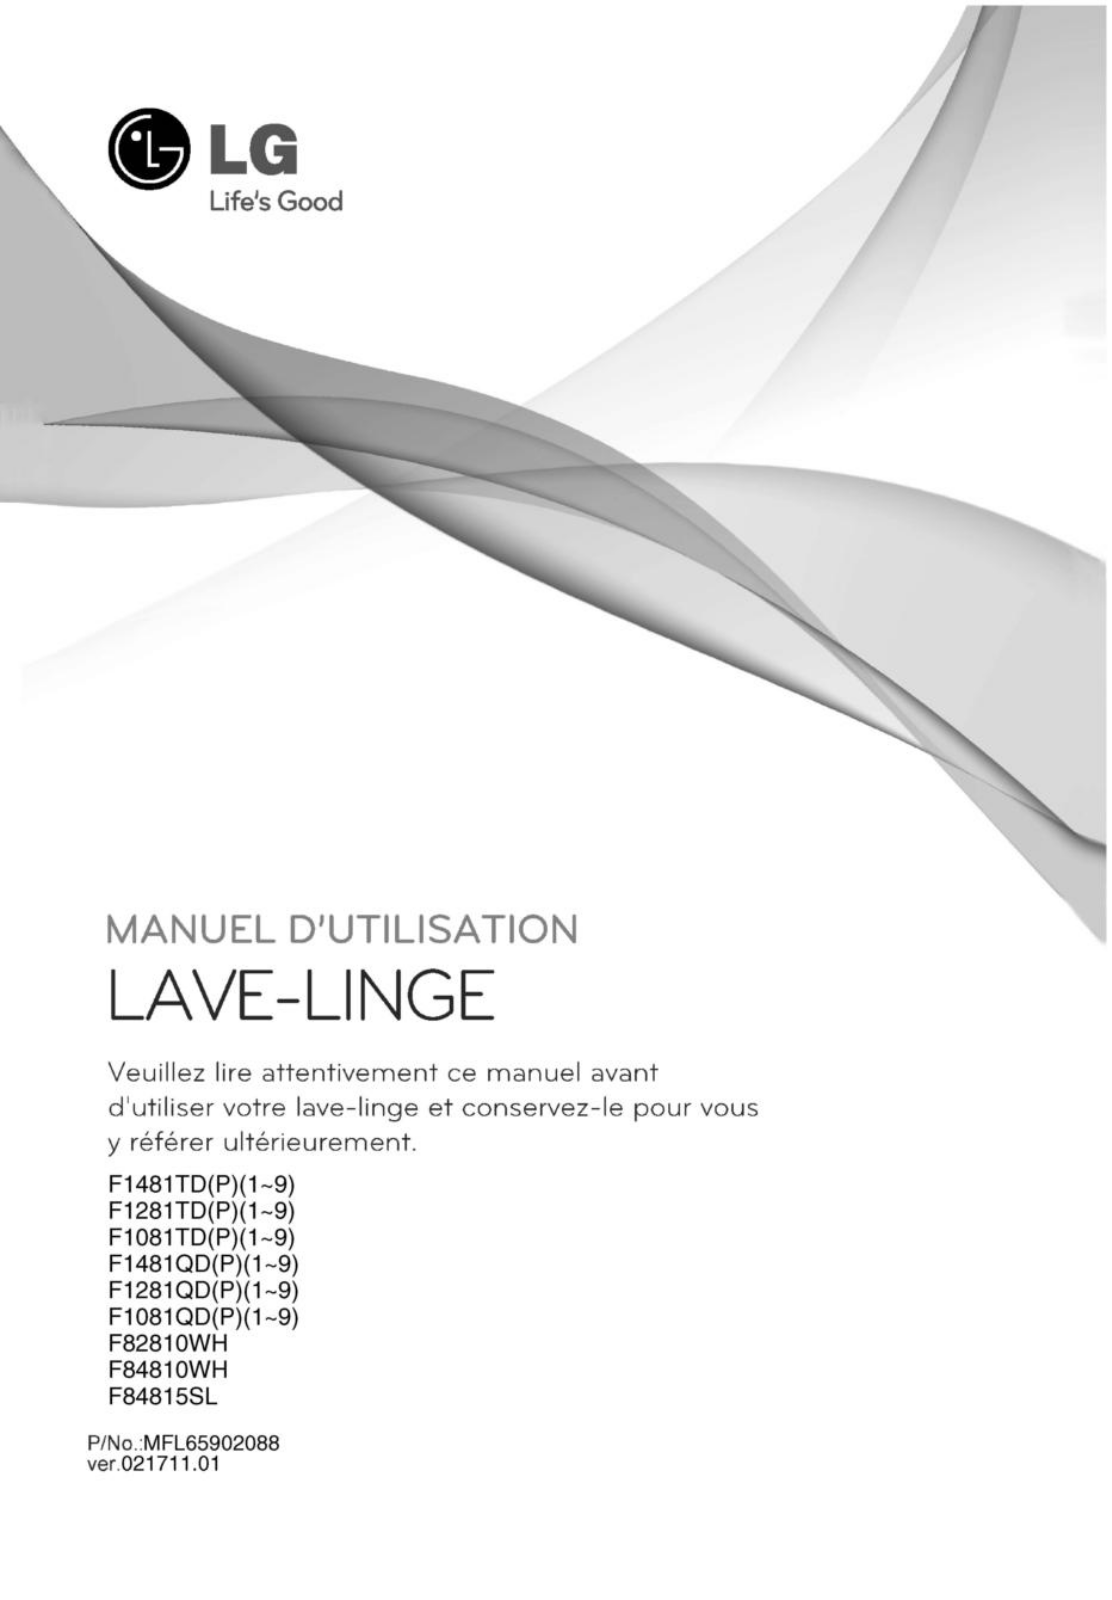 LG F82810WH, F84815SL User Manual